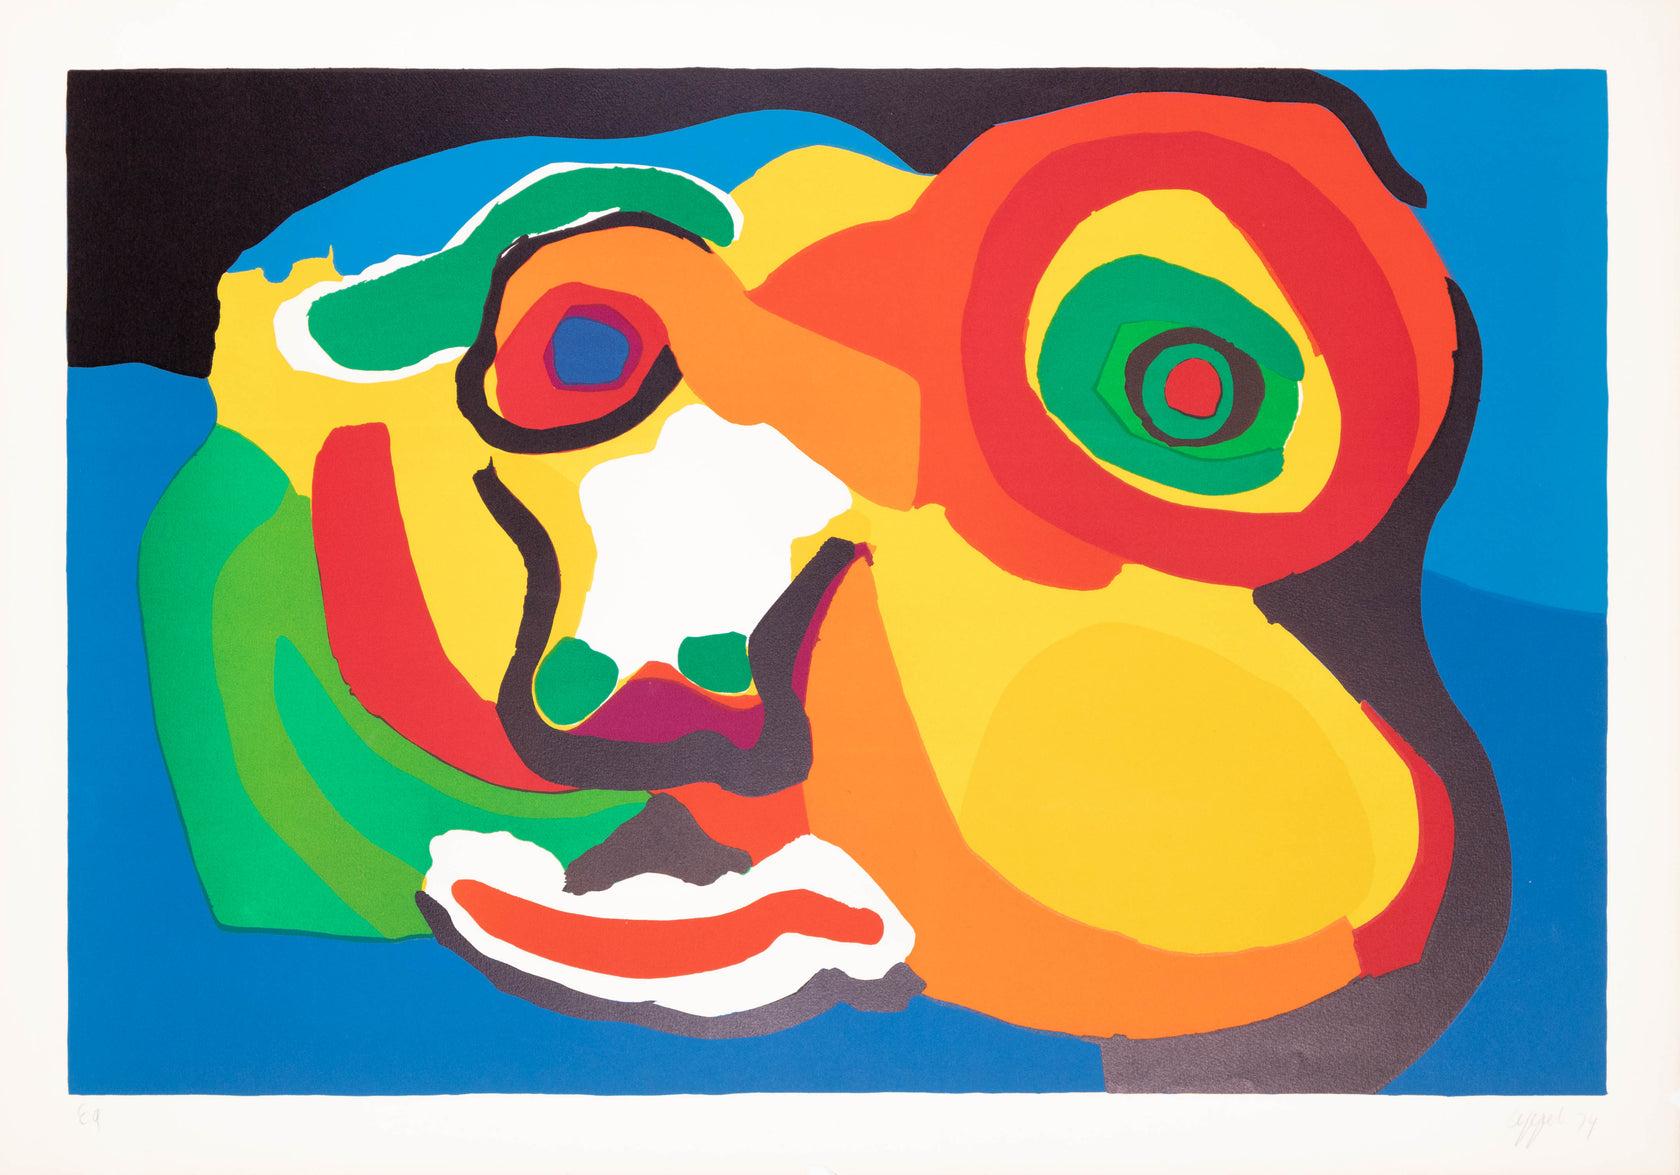 Künstler: Karel Appel 

Medium: Original-Lithographie, 1974 

Abmessungen: 28 x 40 Zoll, 71 cm x 101 cm

Arches Papier - Ausgezeichneter Zustand A+

Diese farbenfrohe und leuchtende Original-Lithografie von Appel ist ein Künstlerabzug und mit dem